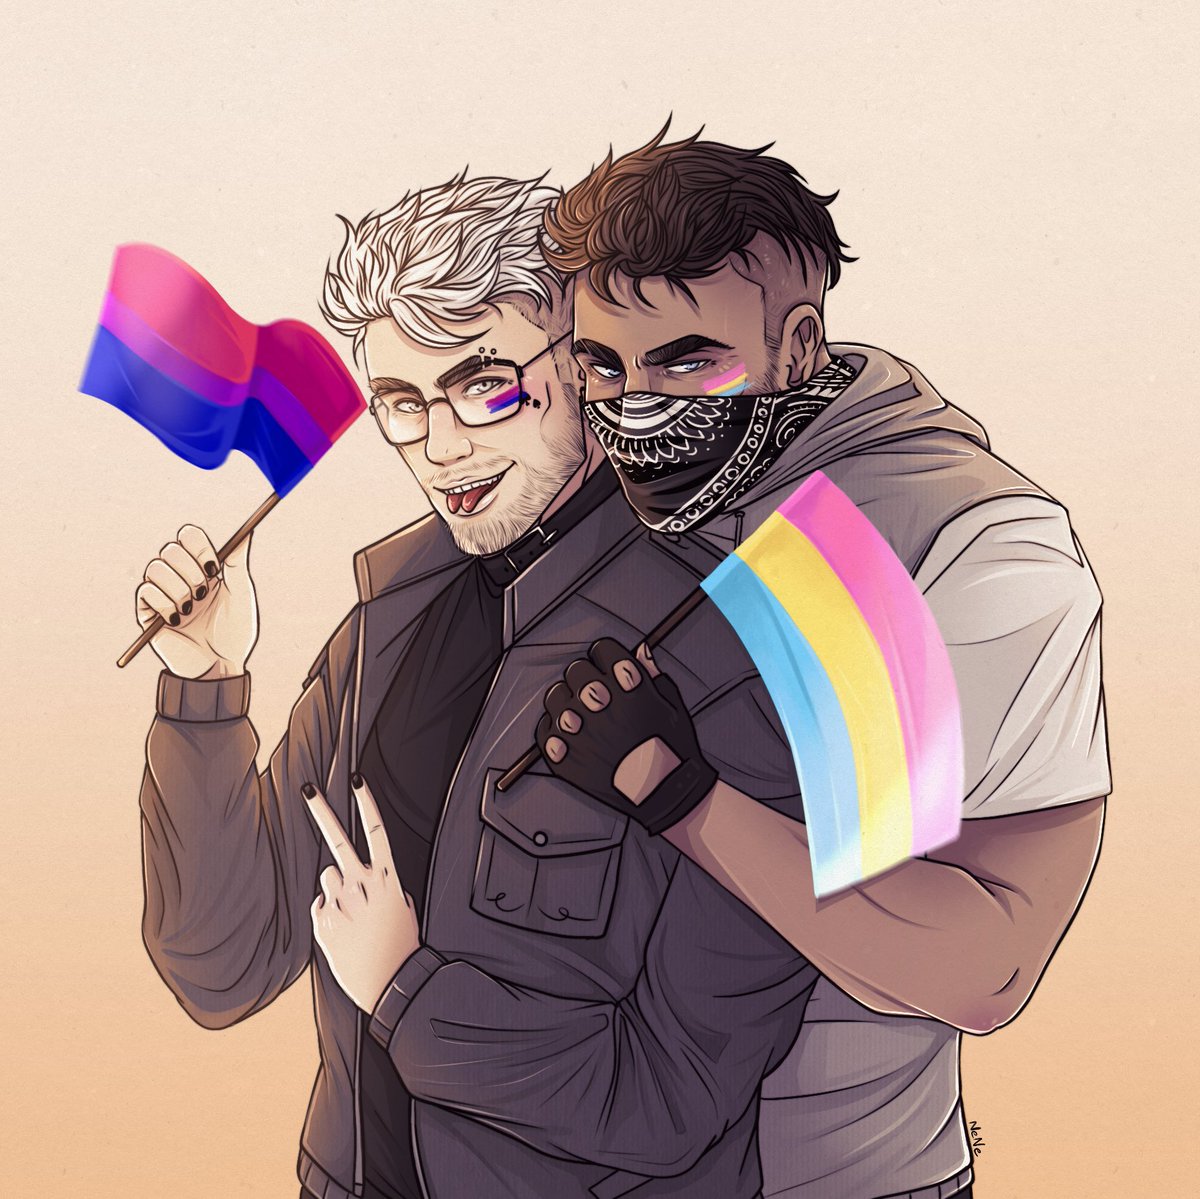 Dobra, lecimy dalej XD #5city #5cityArt #PrideMonth Te flagi się już pojawiły, ale uwielbiam te dwójkę więc musiałam ich narysować. Vasquez wybrane przeze mnie, Speedo canon :)